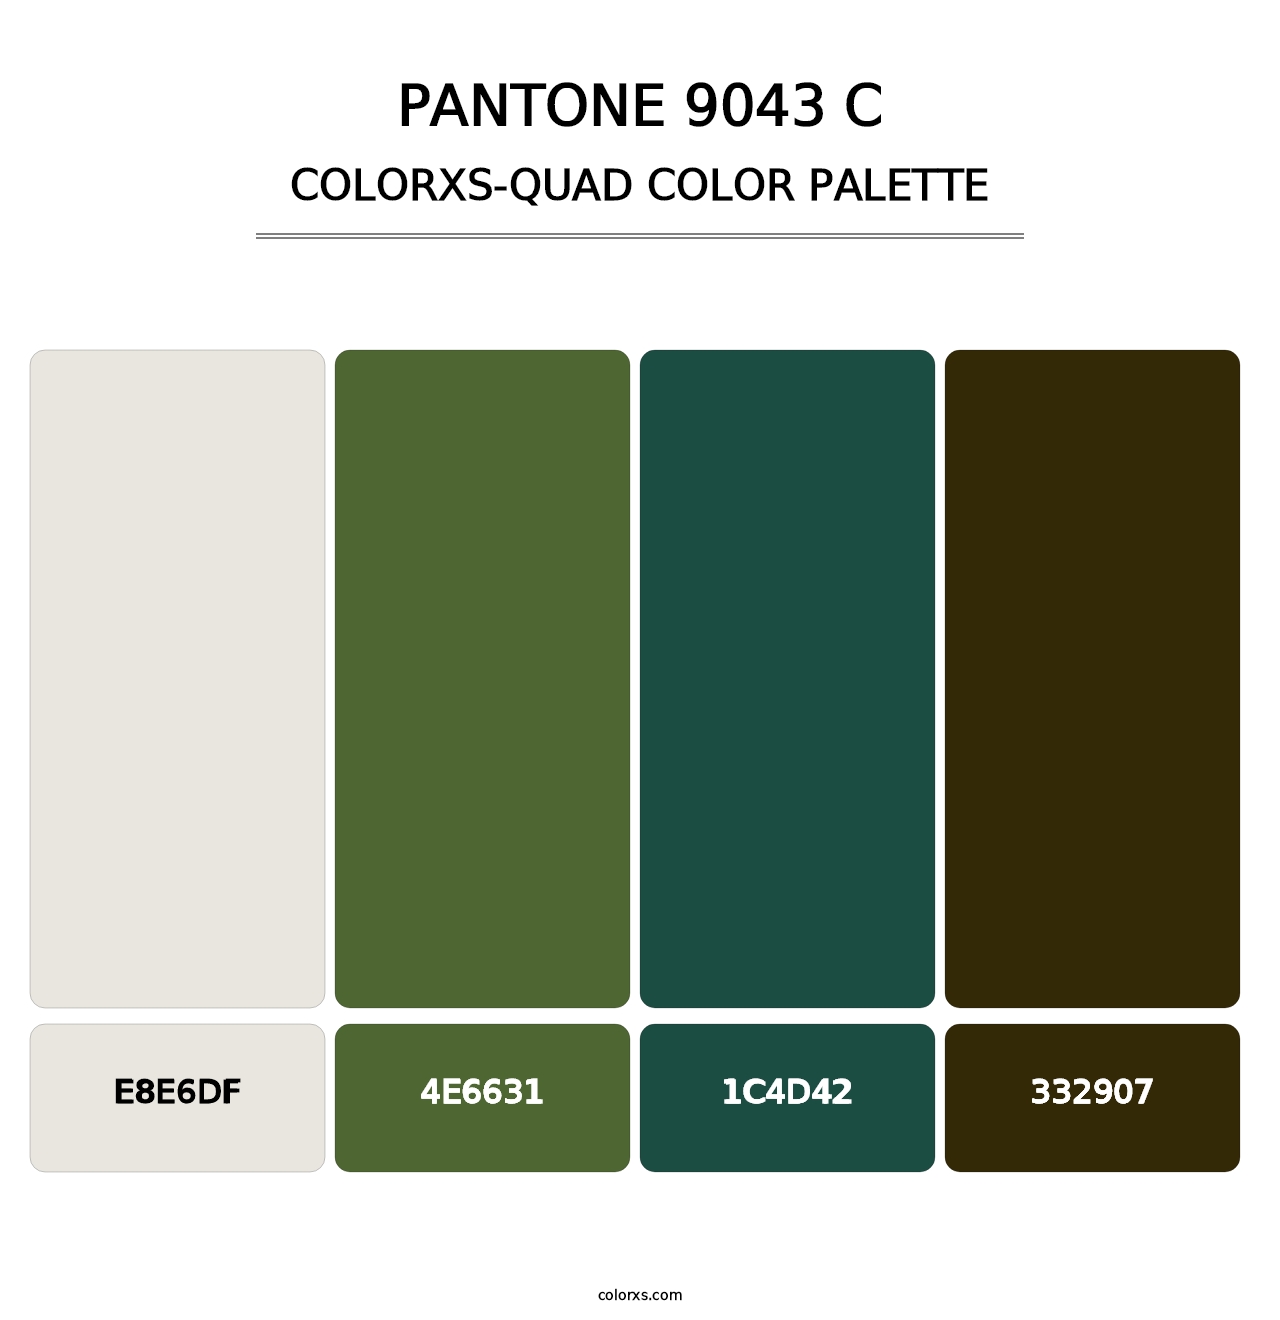 PANTONE 9043 C - Colorxs Quad Palette